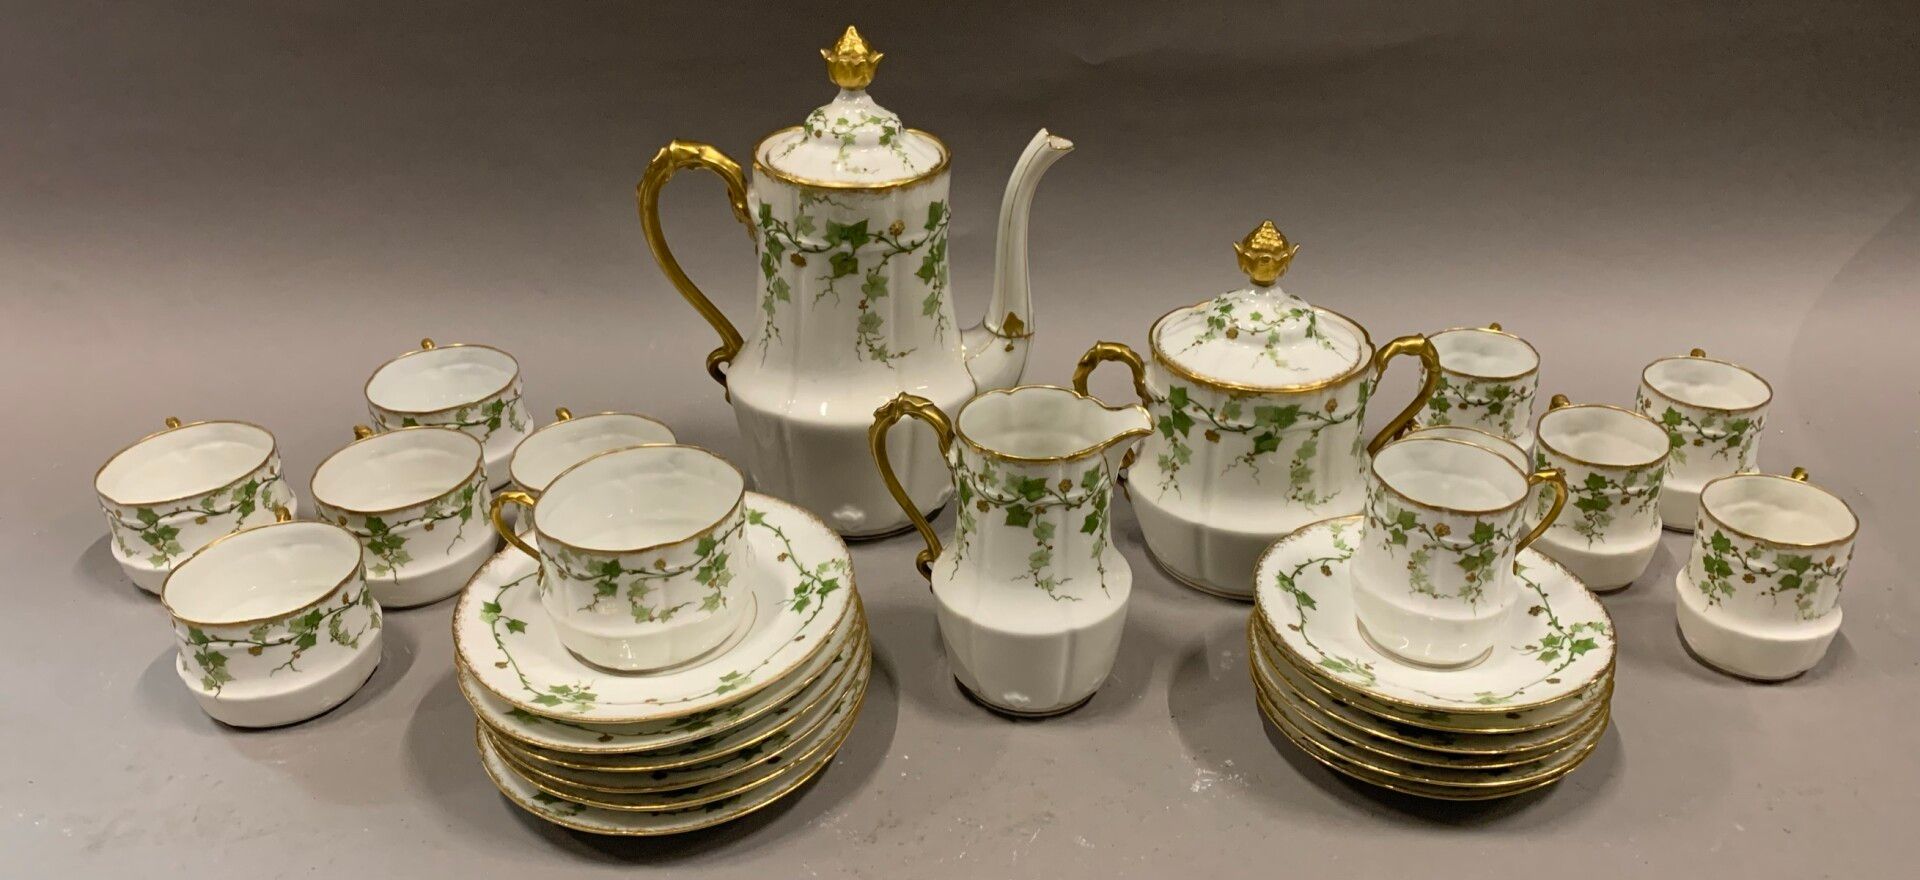 Null 常春藤装饰的瓷器茶具和咖啡具。

19世纪末或20世纪初。